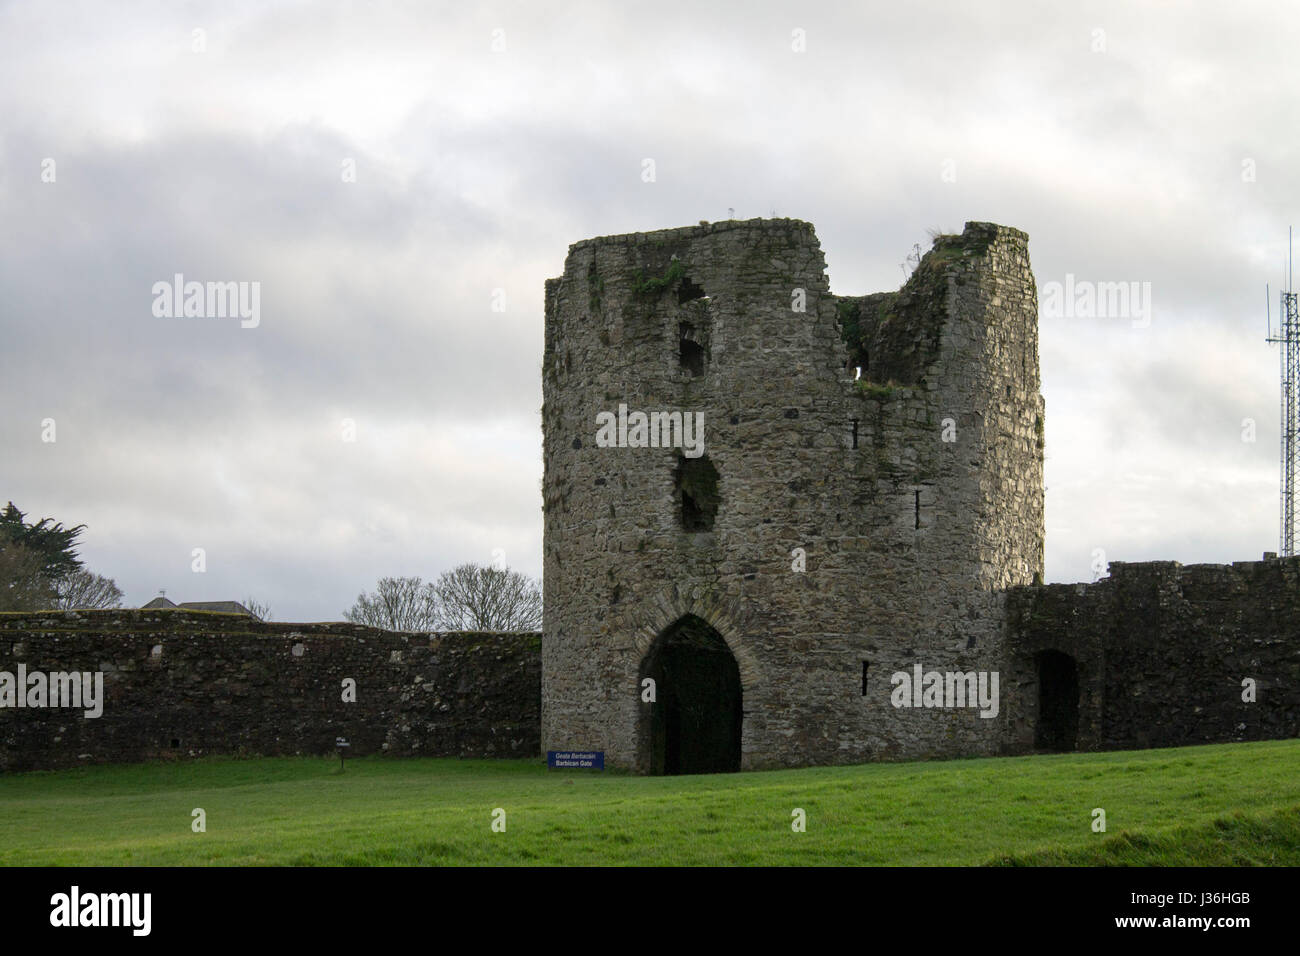 Castillo de Braveheart en Trim, Irlanda con nublado cielo de invierno. Foto de stock